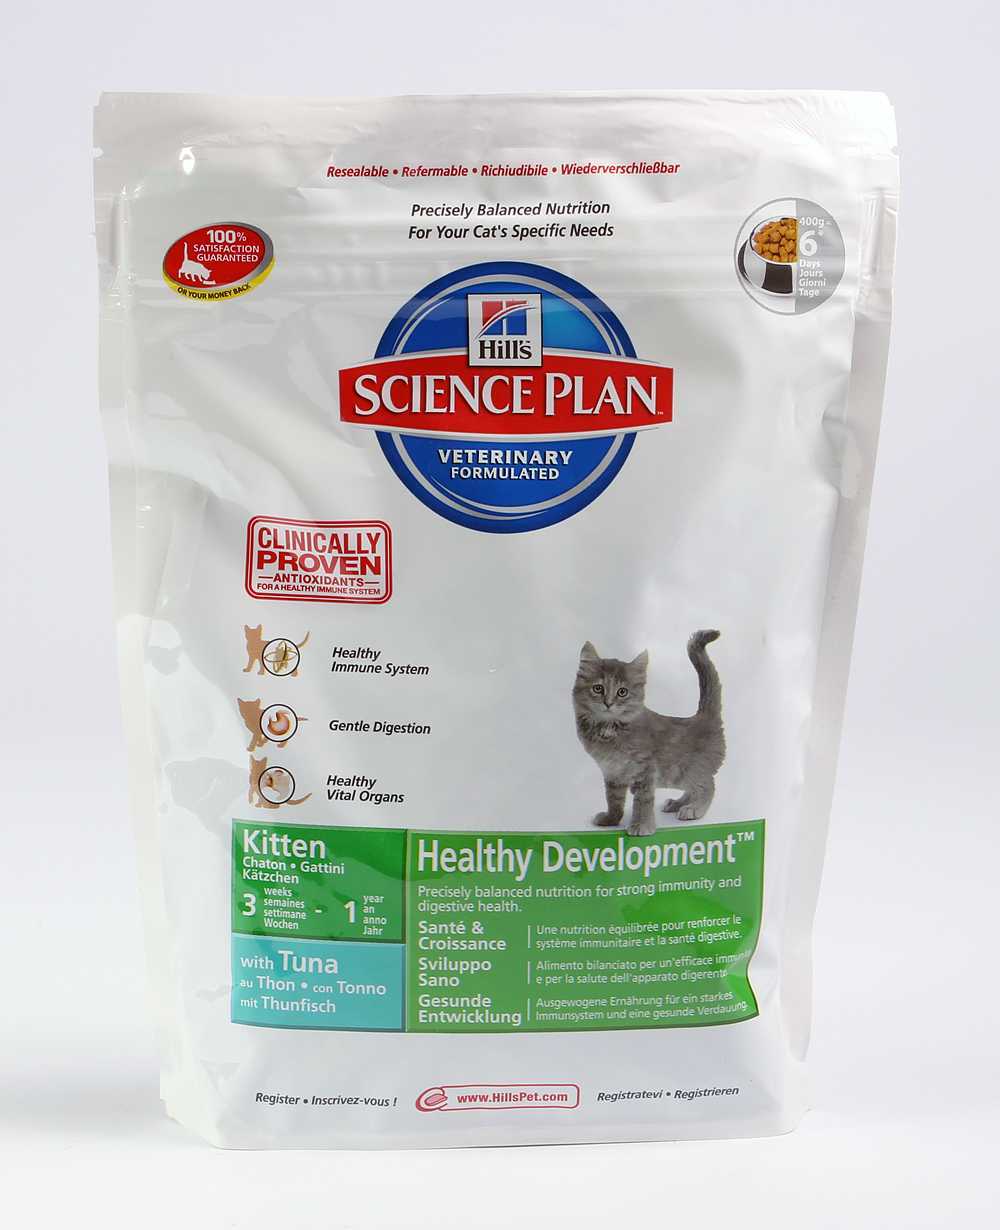 Узнайте сейчас о преимуществах и недостатках корма для кошек Hills и собственном отзыве Оставьте свой отзыв о данном продукте